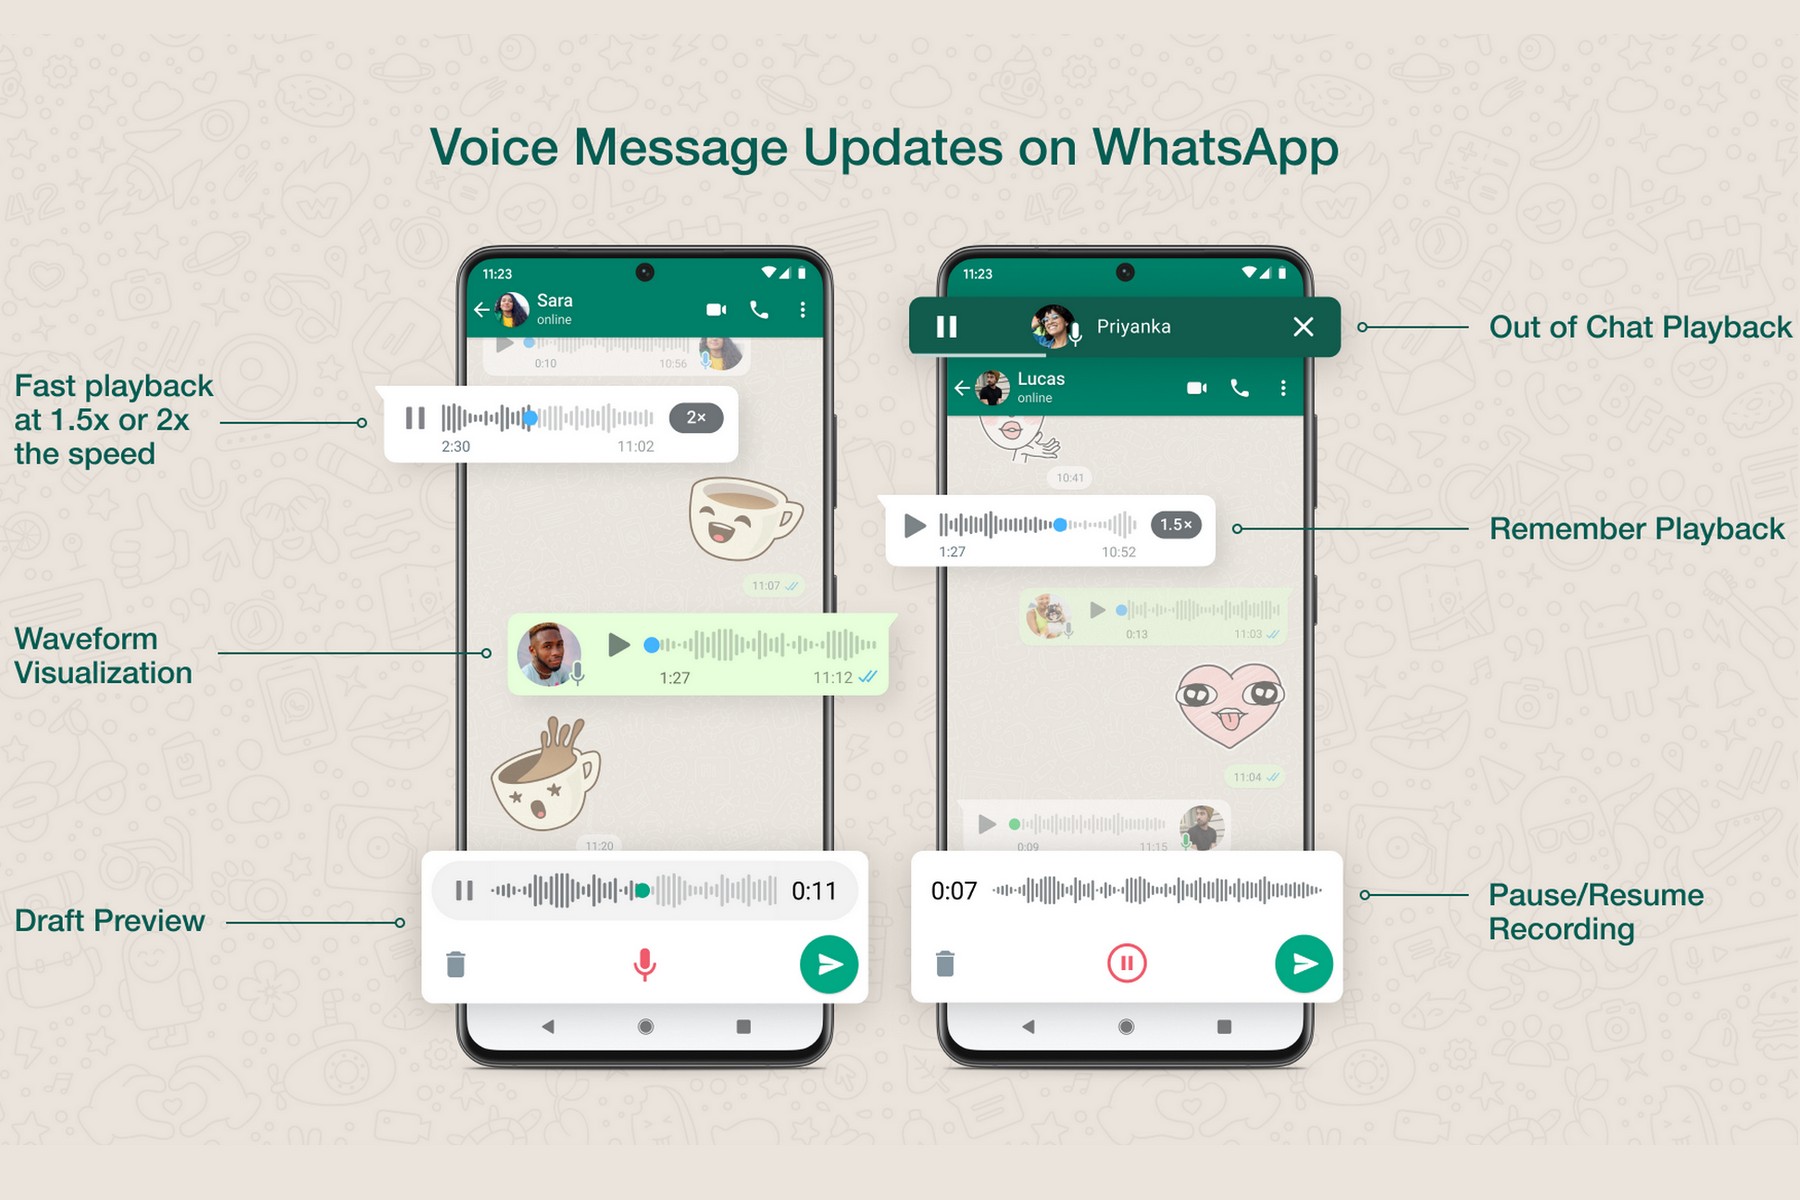 Voice message updates on WhatsApp.